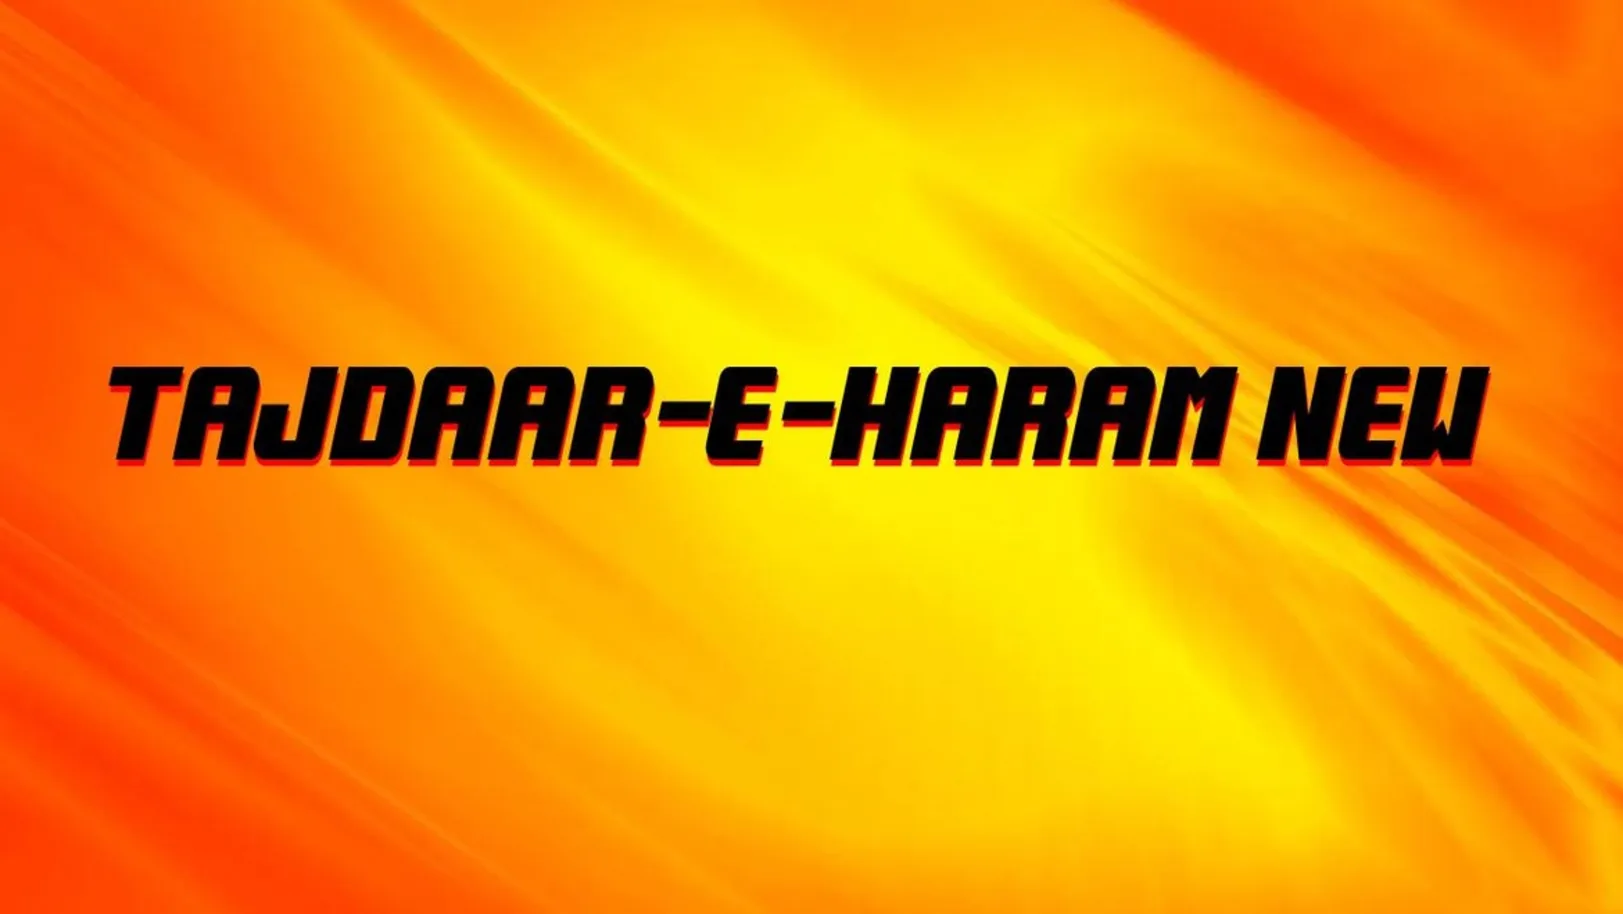 Tajdaar-E-Haram New Streaming Now On Zee Salaam